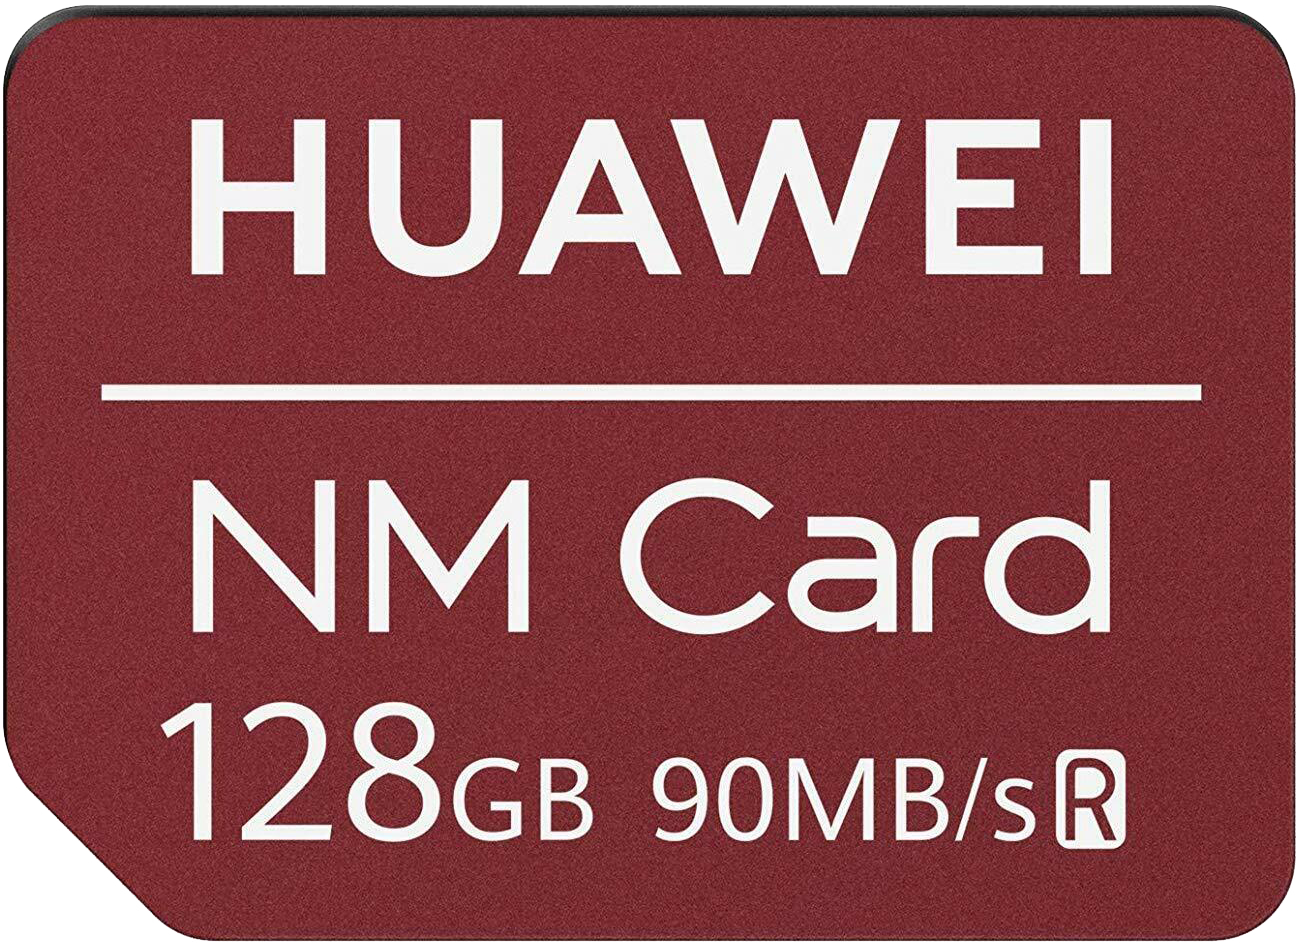 Huawei NM Card rot - Ohne Vertrag